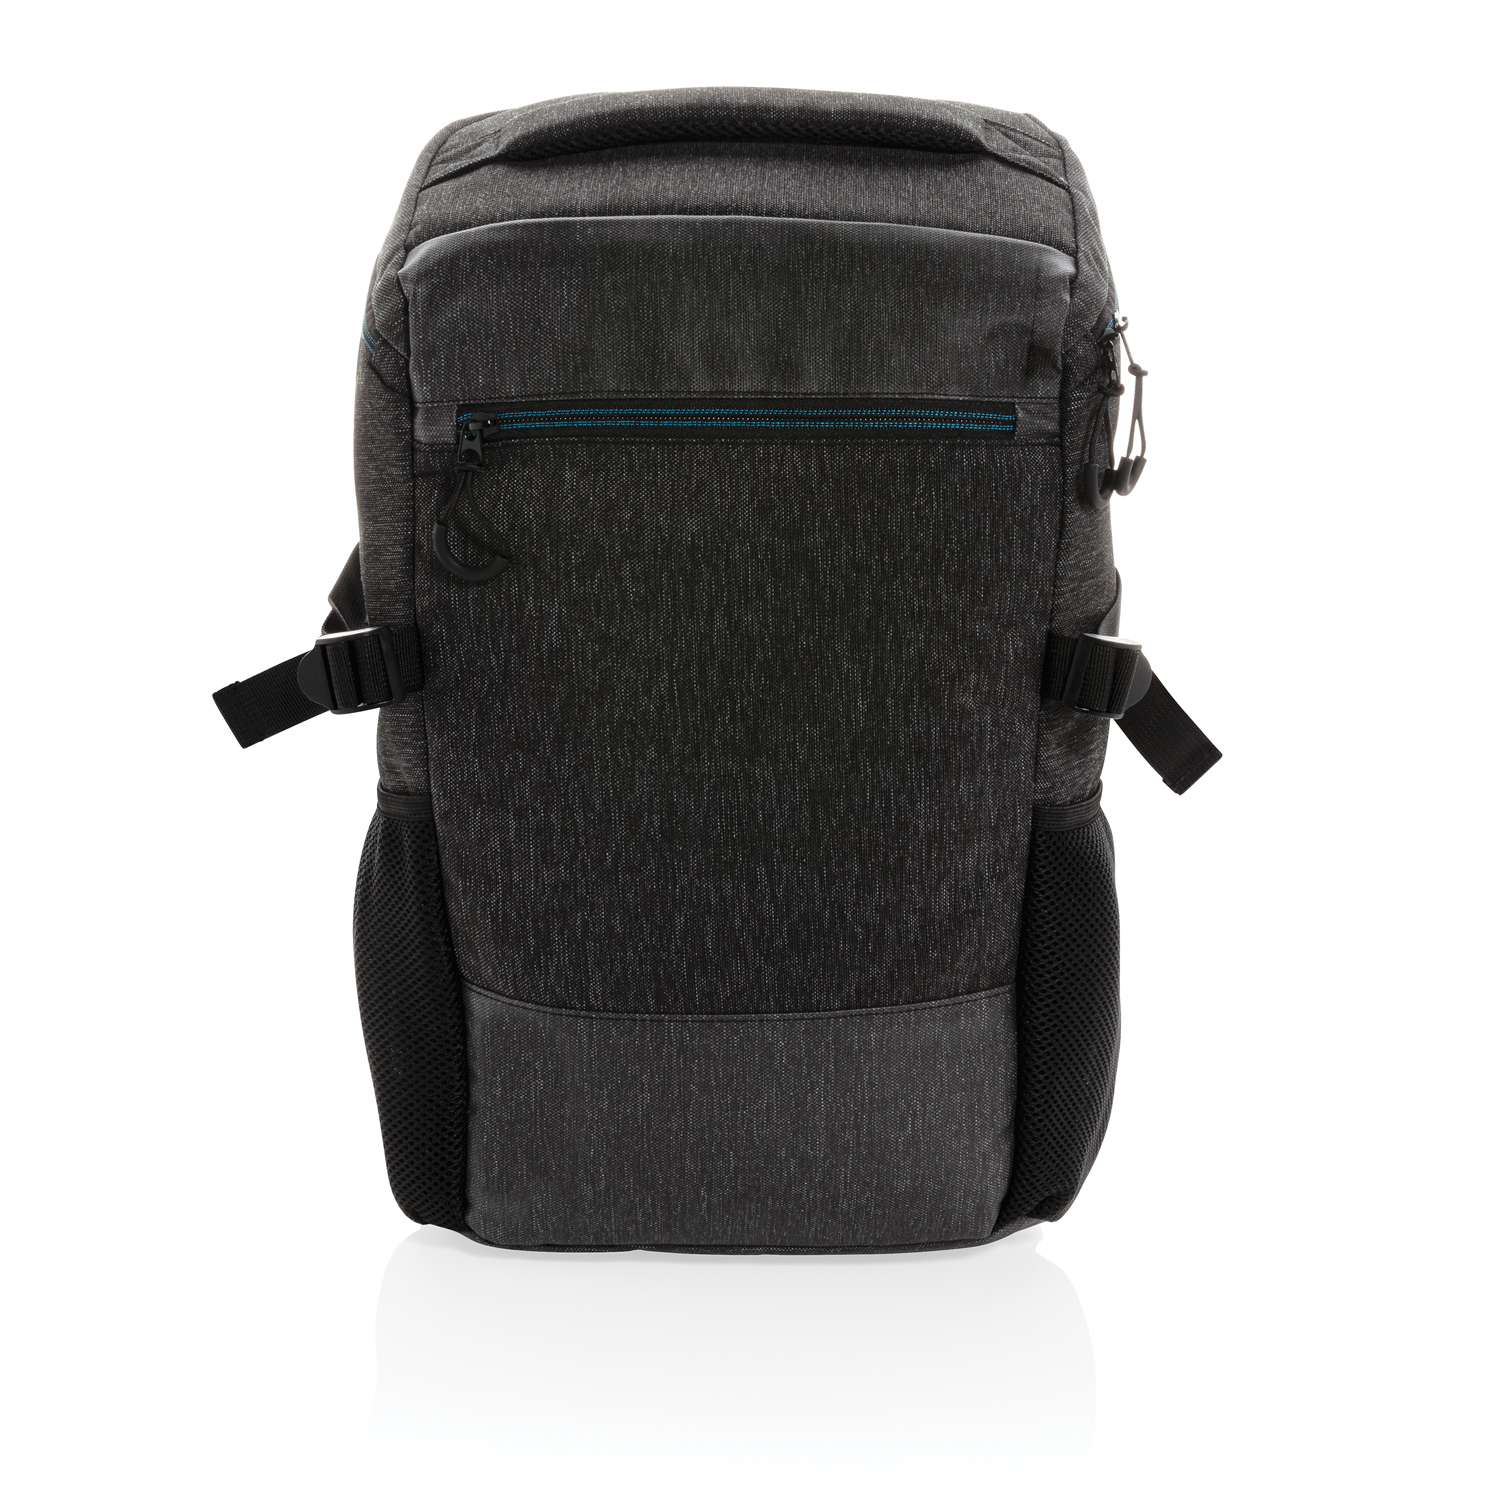 Рюкзак с легким доступом 900D для ноутбука 15.6" (не содержит ПВХ)